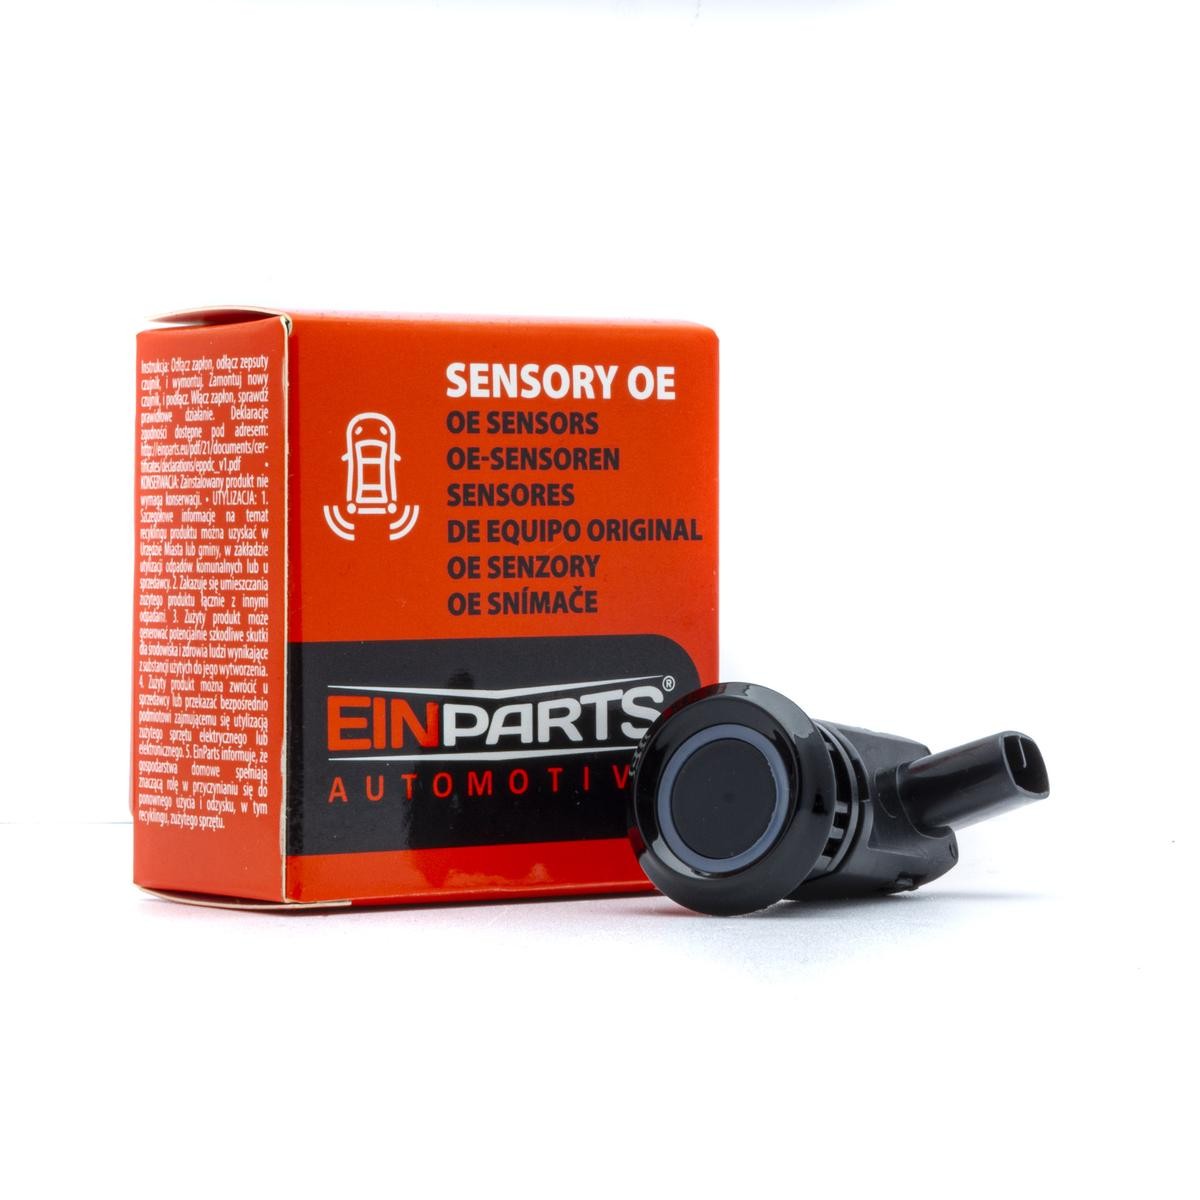 EINPARTS Front, Rear, black, Ultrasonic Sensor Reversing sensors EPPDC74 buy